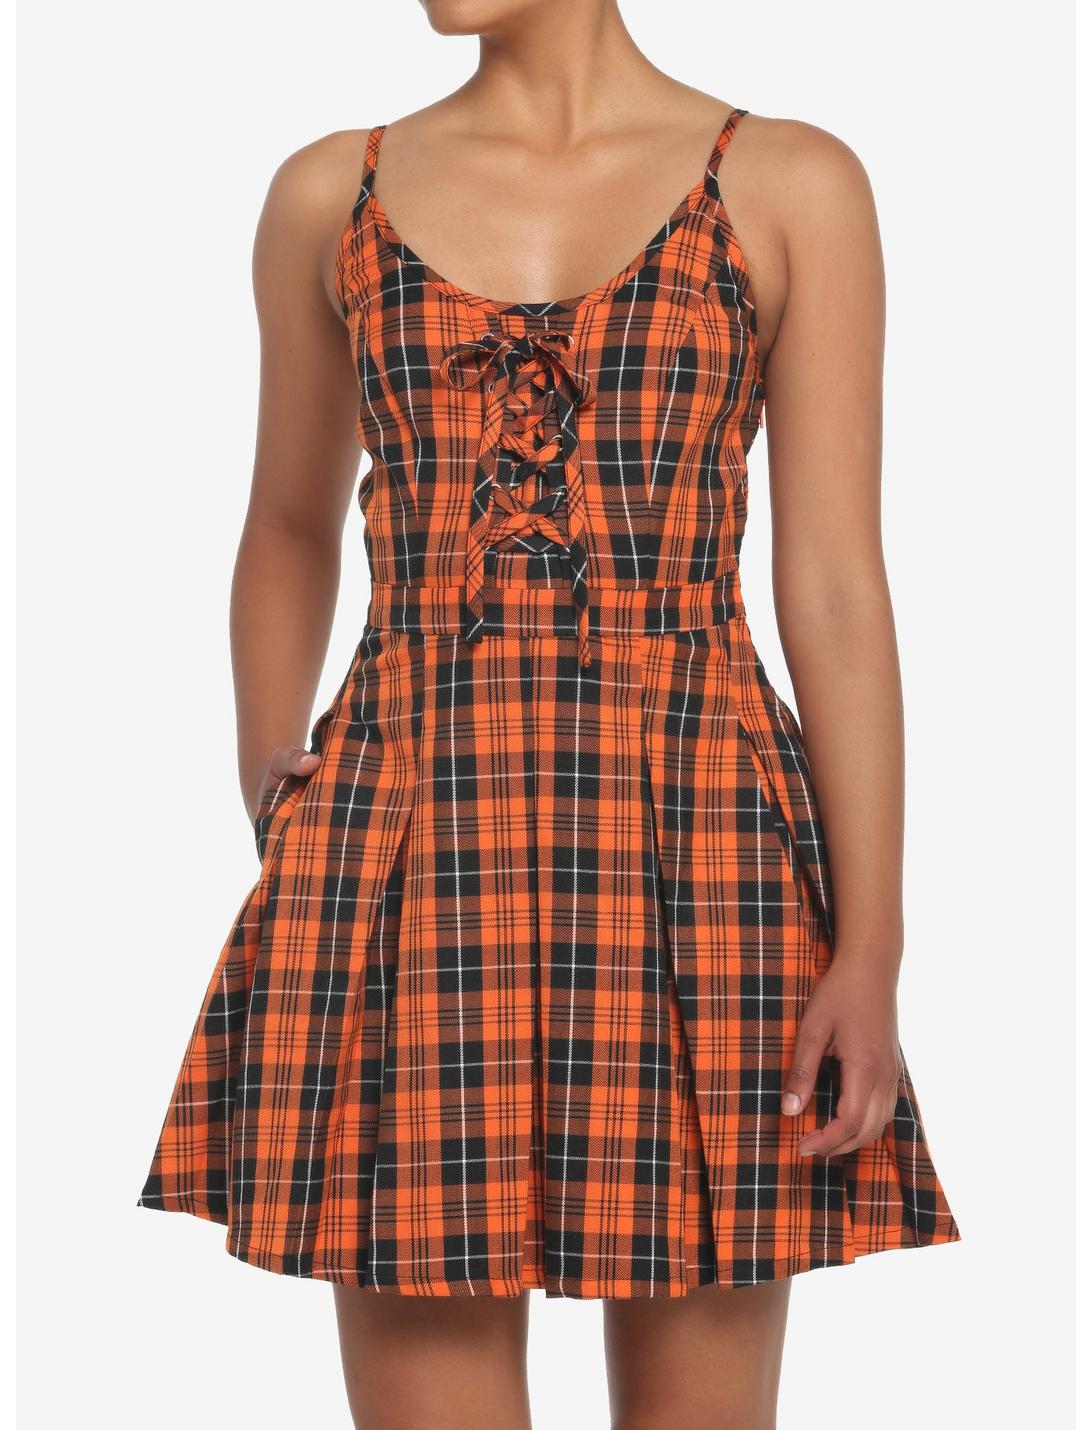 Black & Orange Plaid Pleated Lace-Up Dress, PLAID - MULTI, hi-res